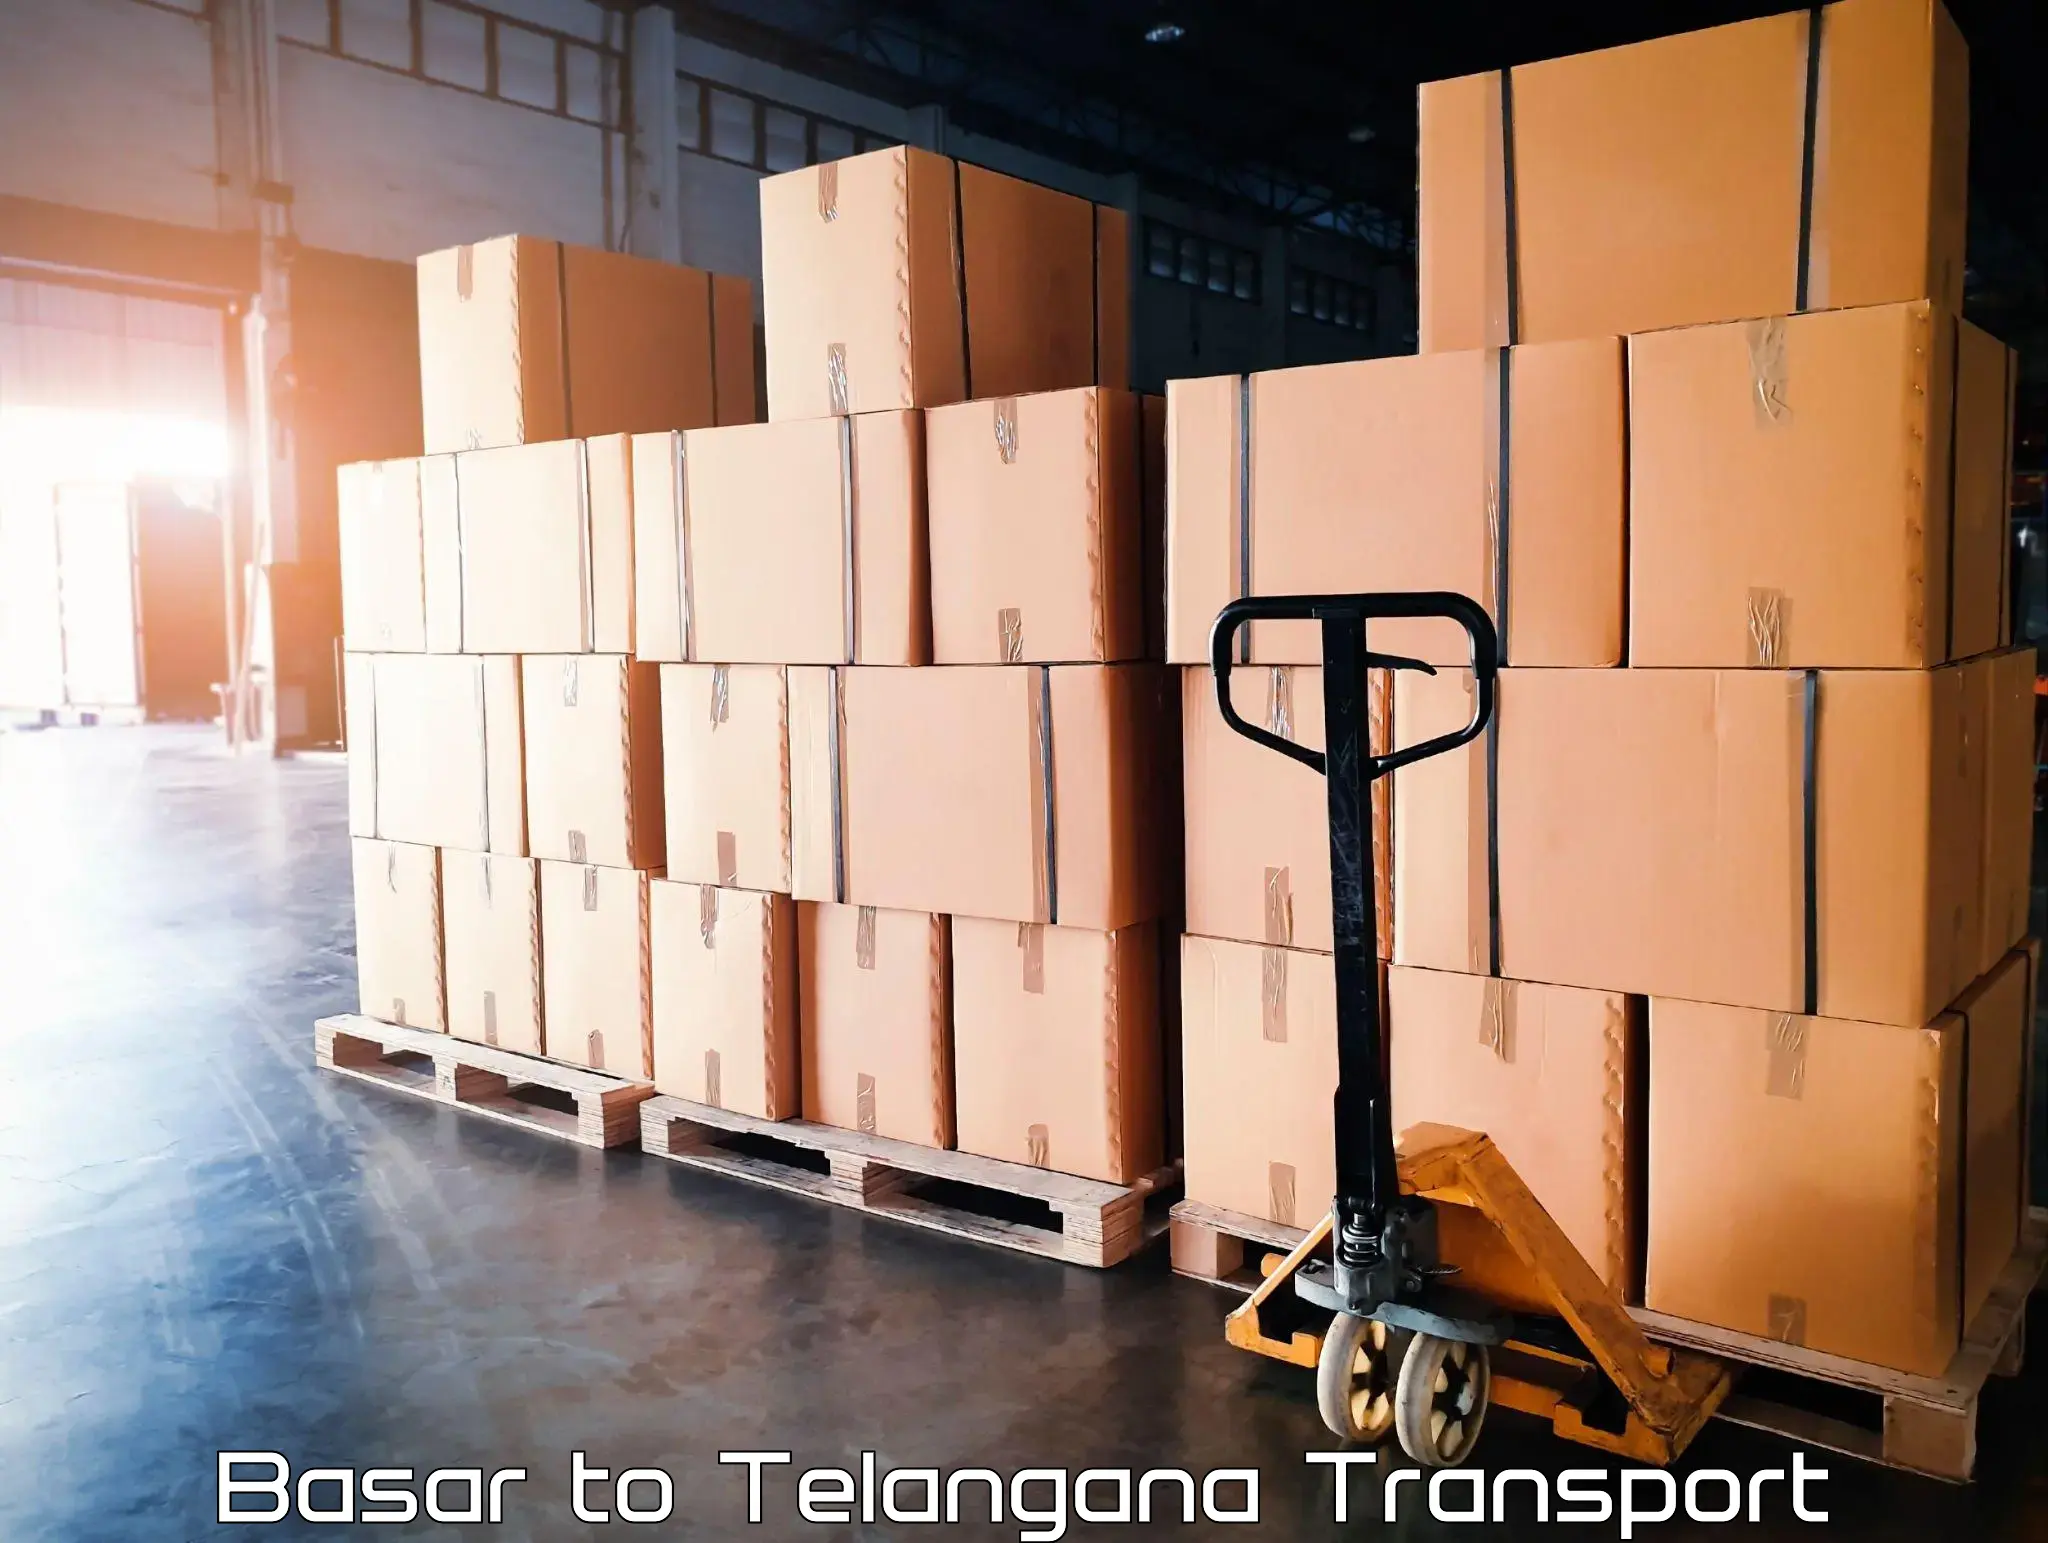 Goods delivery service Basar to Karimnagar